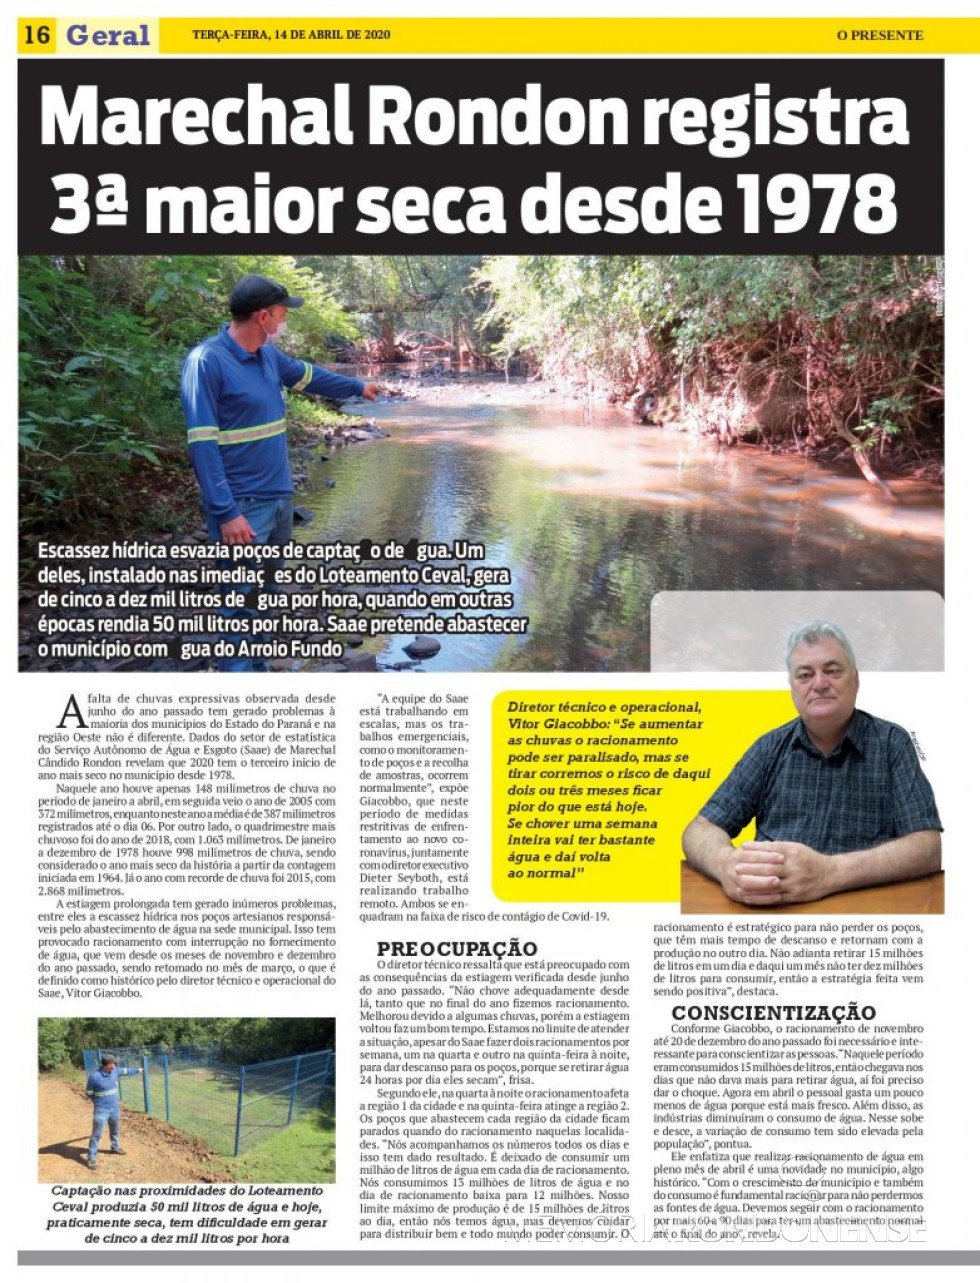 || Destaque (1ª parte) do jornal O Presente sobre a estiagem que atinge a região, em abril de 2020.
Imagem: Acervo O Presente - FOTO  11 - 